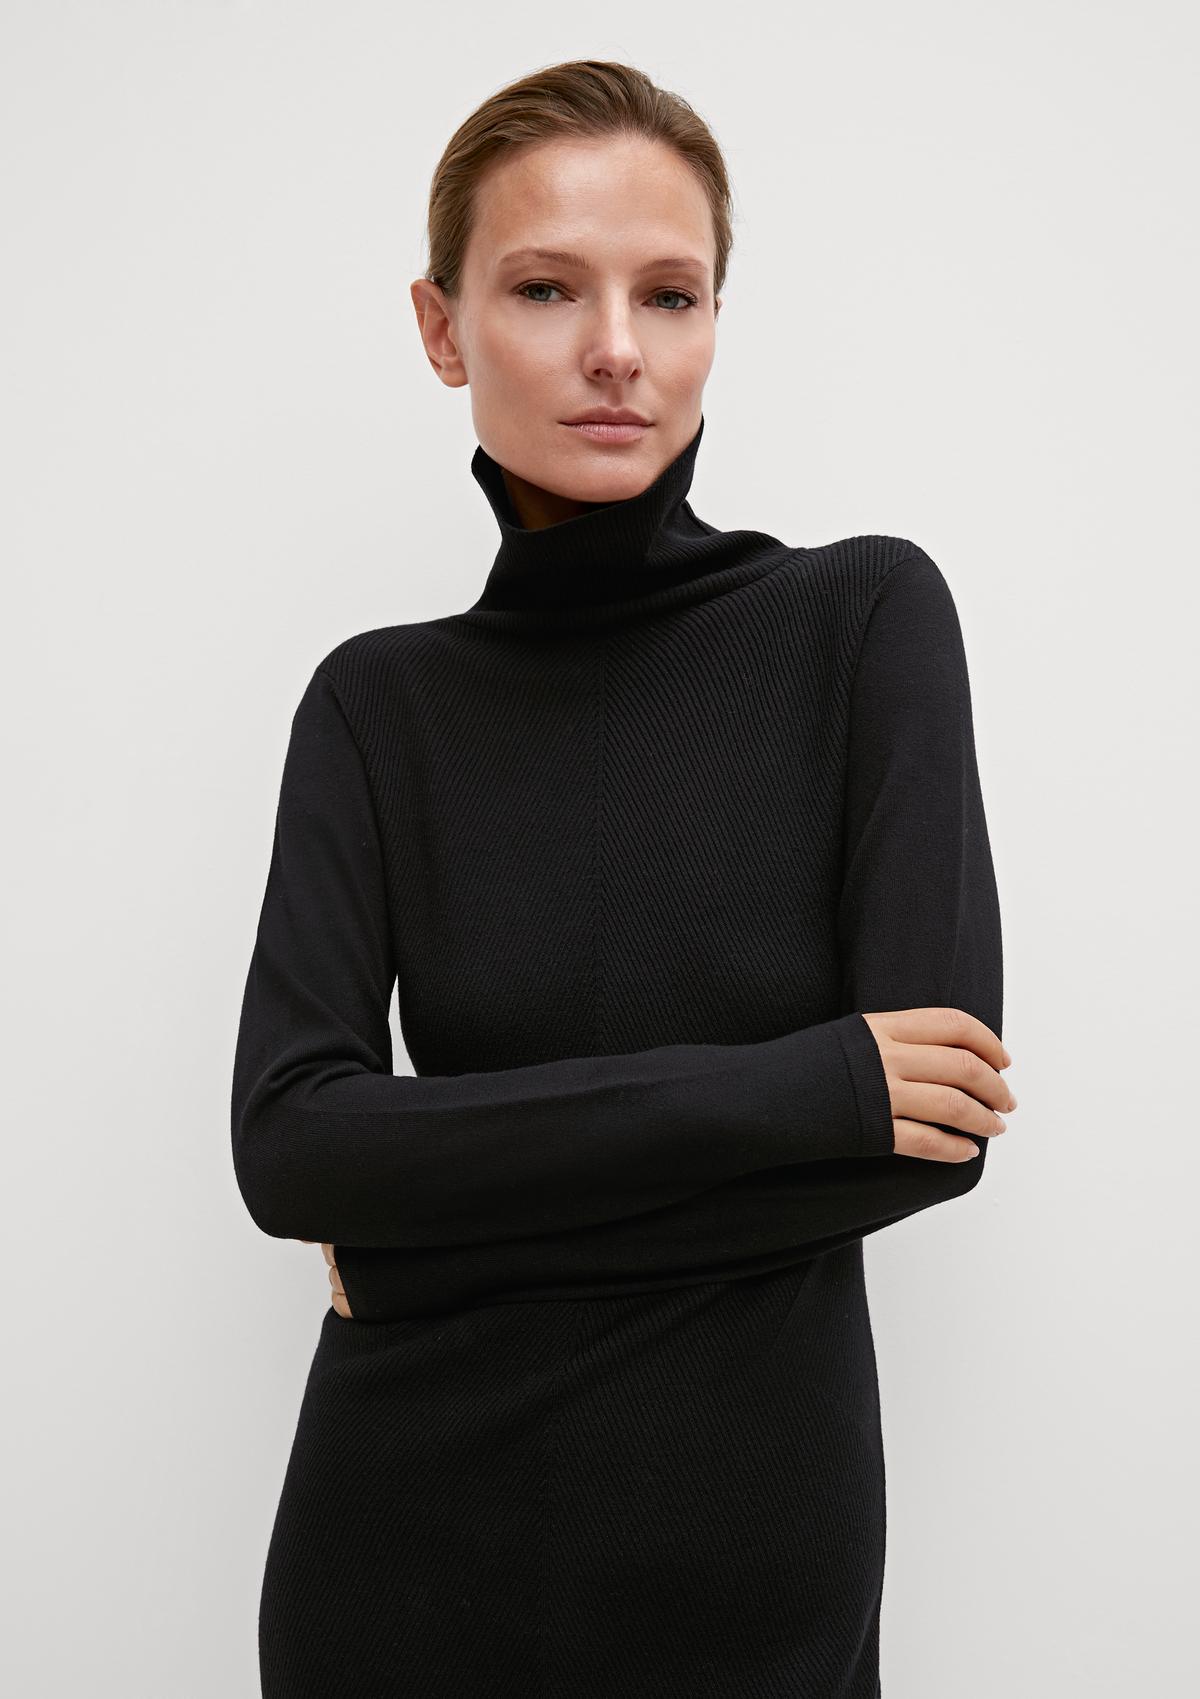 Midi dress in rib knit fabric - black | Comma